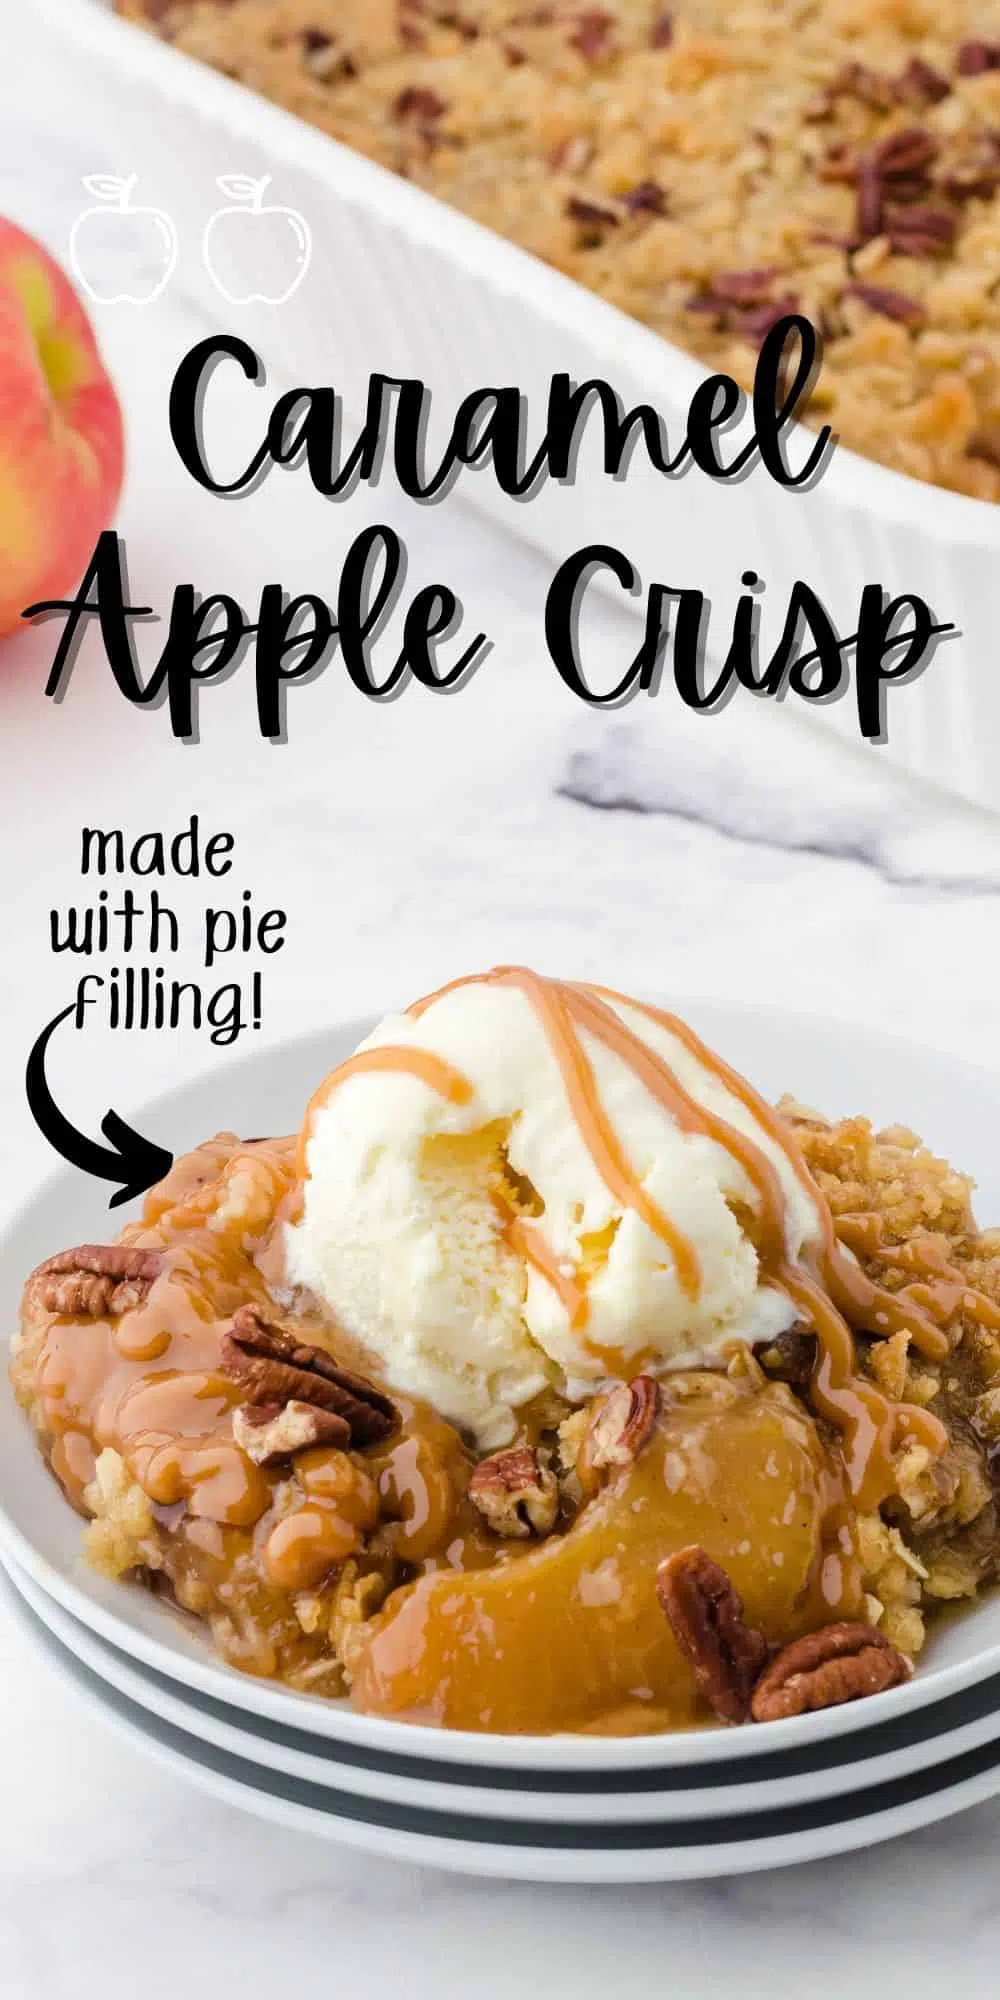 Caramel Apple Crisp with apple pie filling recipe